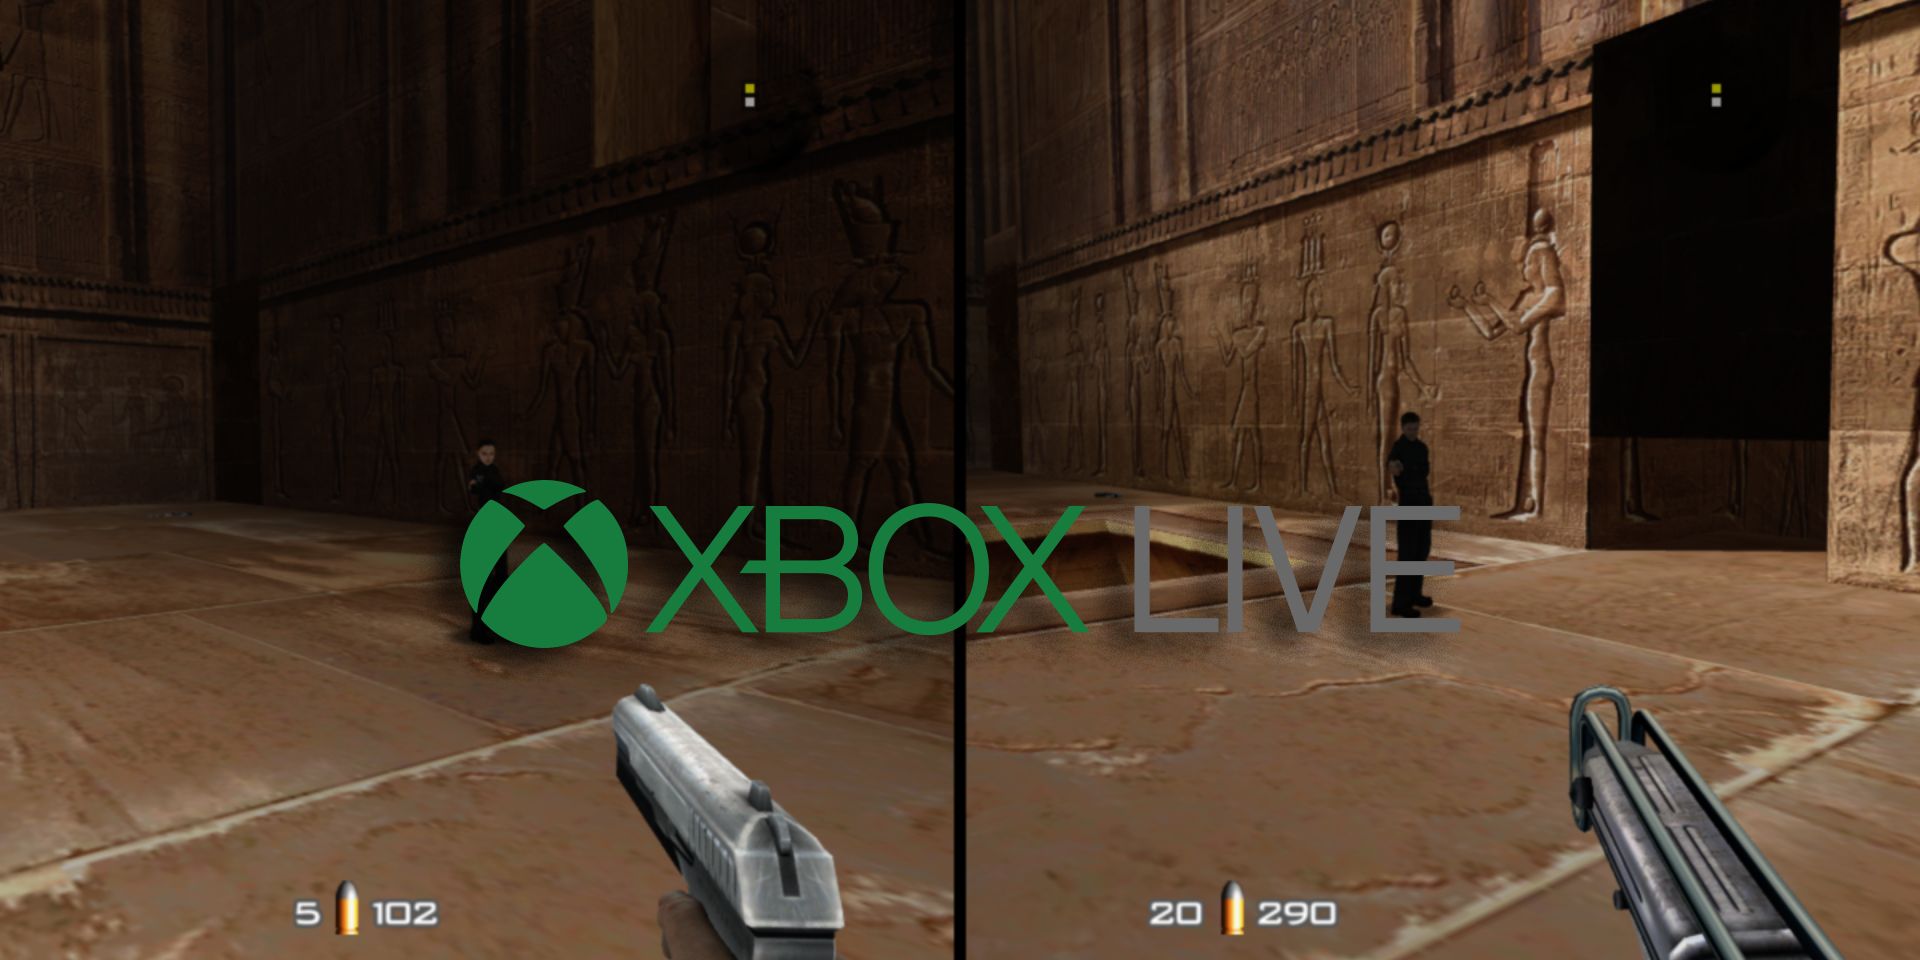 GoldenEye 007 XBLA (Xbox 360) Vazou na Internet! 